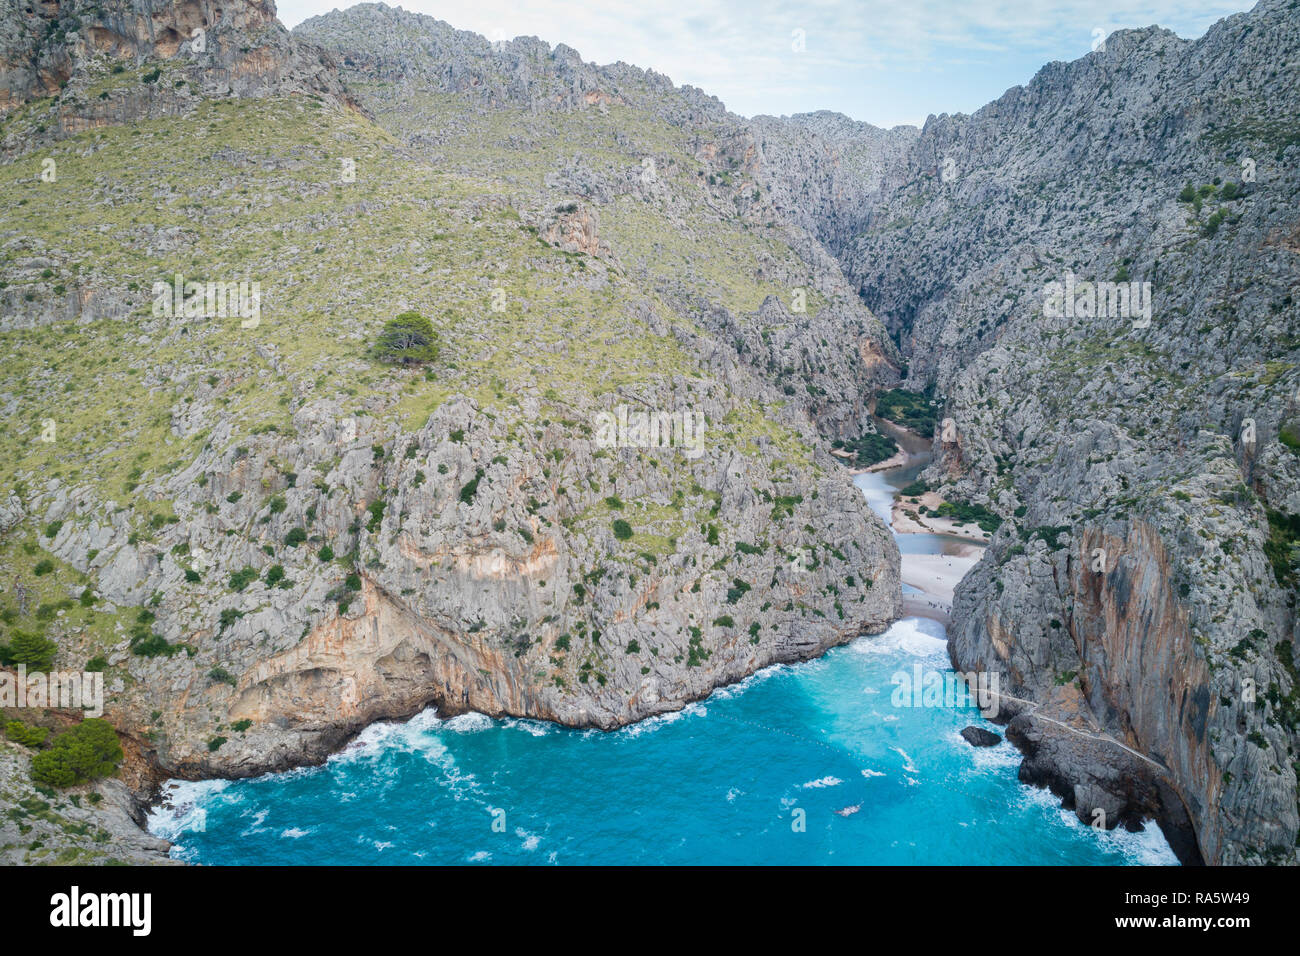 Torrent de Pareis - canyon più profondo dell'isola di Mallorca, Spagna Foto Stock